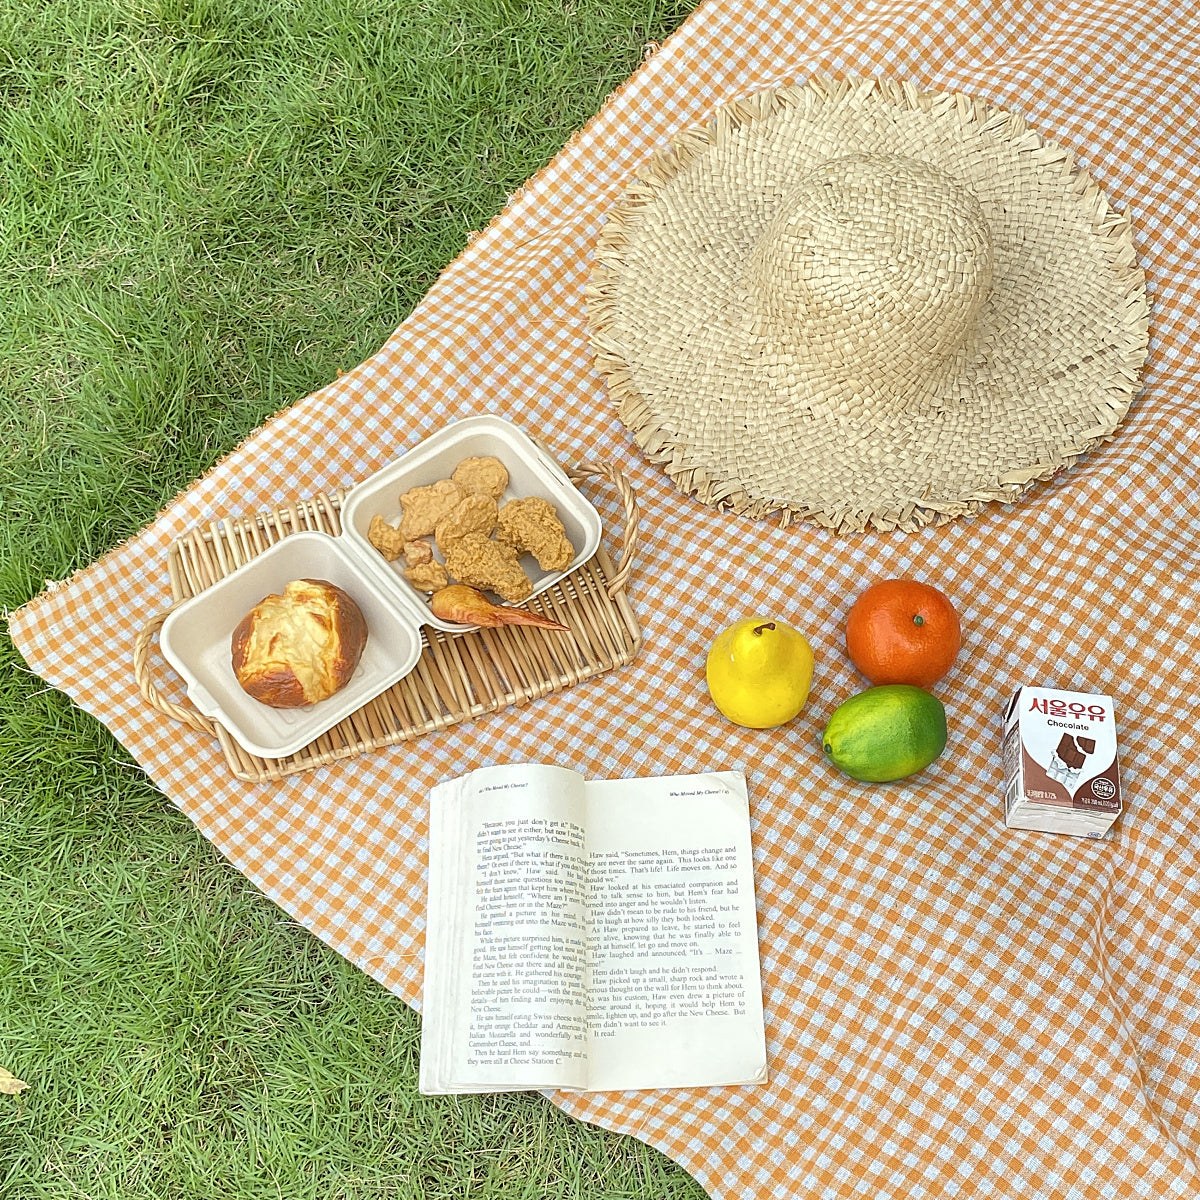 natural gingham check picnic cloth